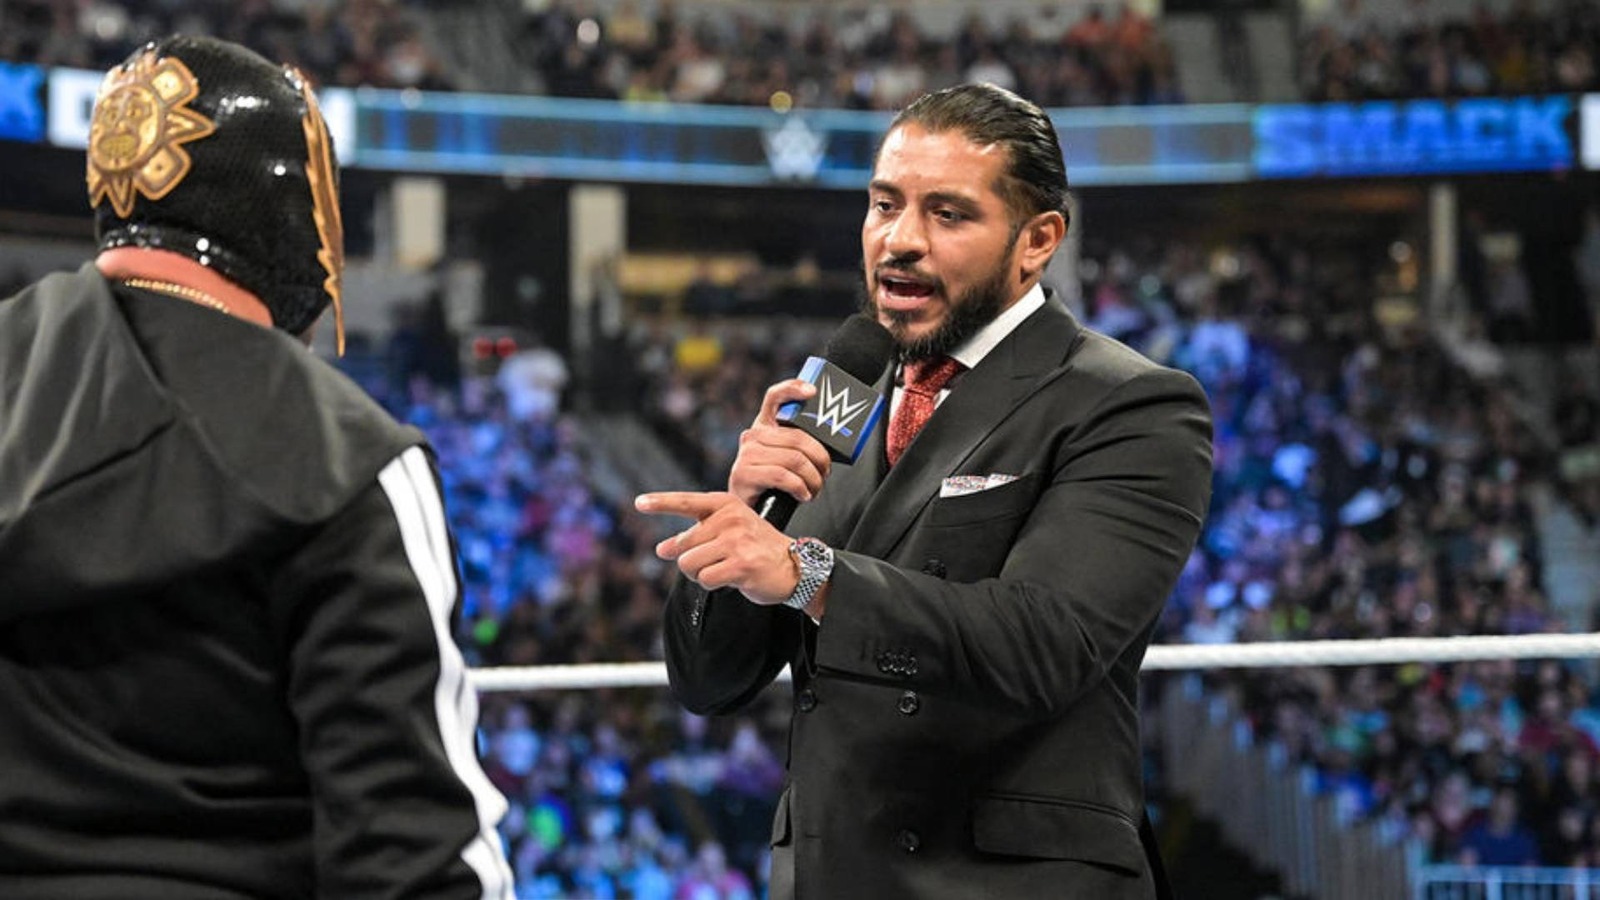 Santos Escobar explica por qué es importante para él representar la cultura mexicana en la WWE